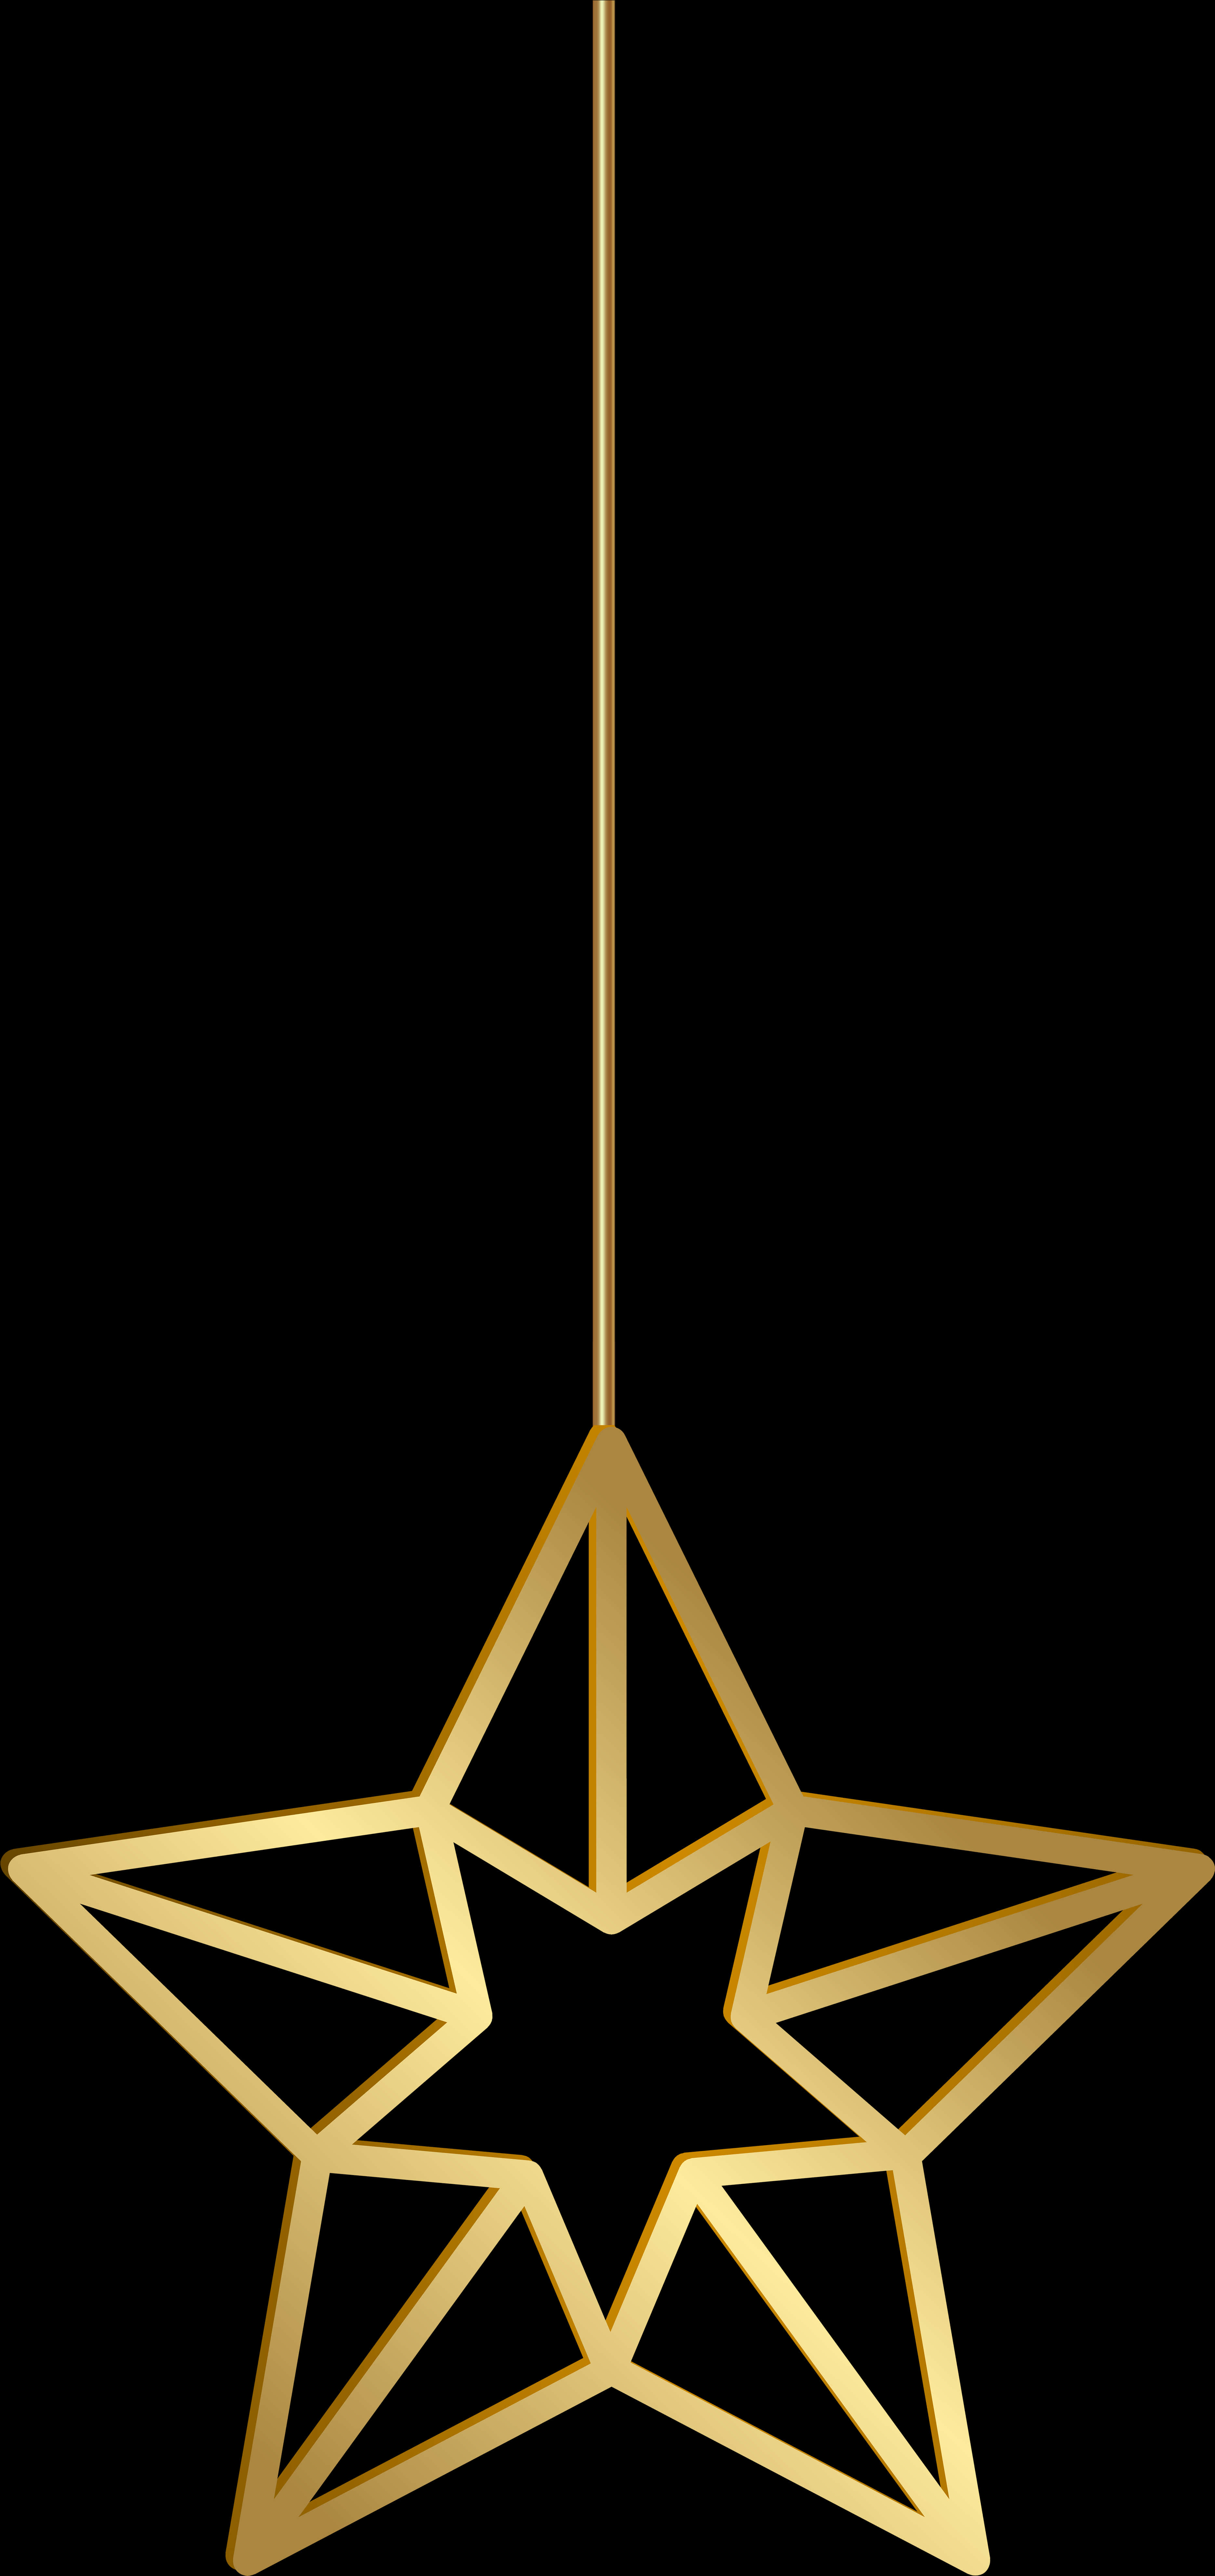 Hanging Golden Star Decoration PNG